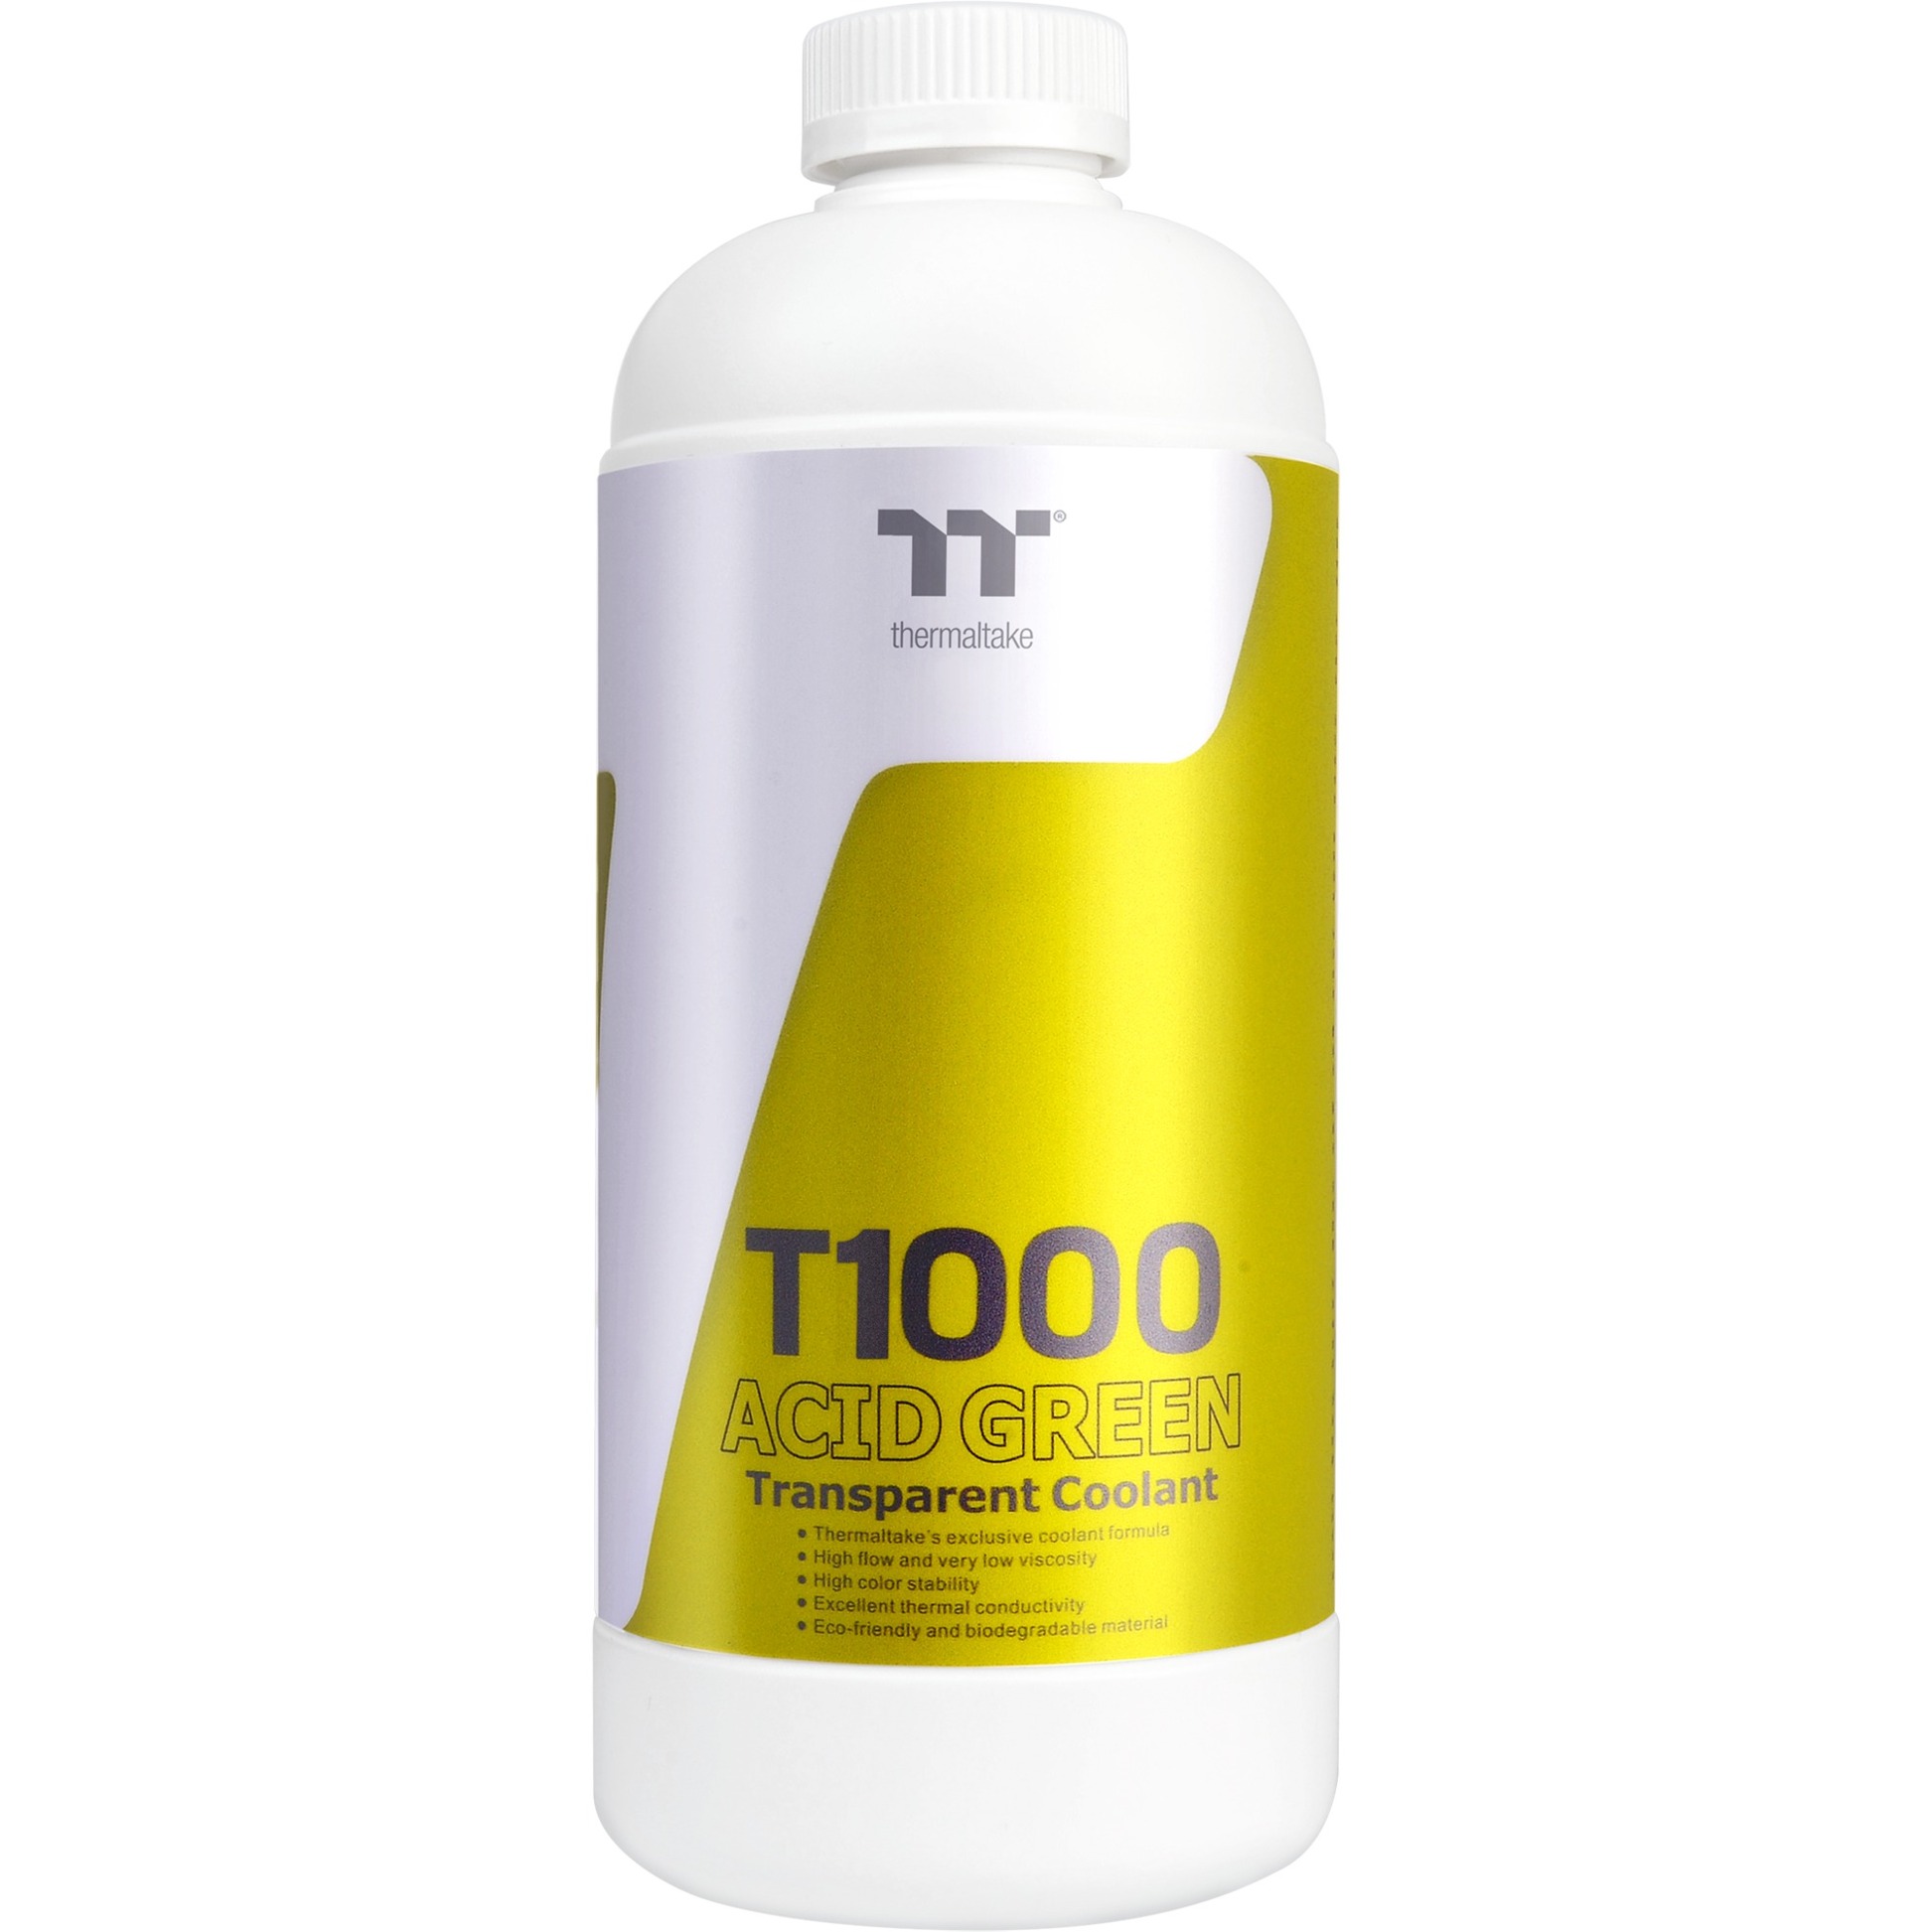 Image of Alternate - T1000 Coolant - Acid Green, Kühlmittel online einkaufen bei Alternate